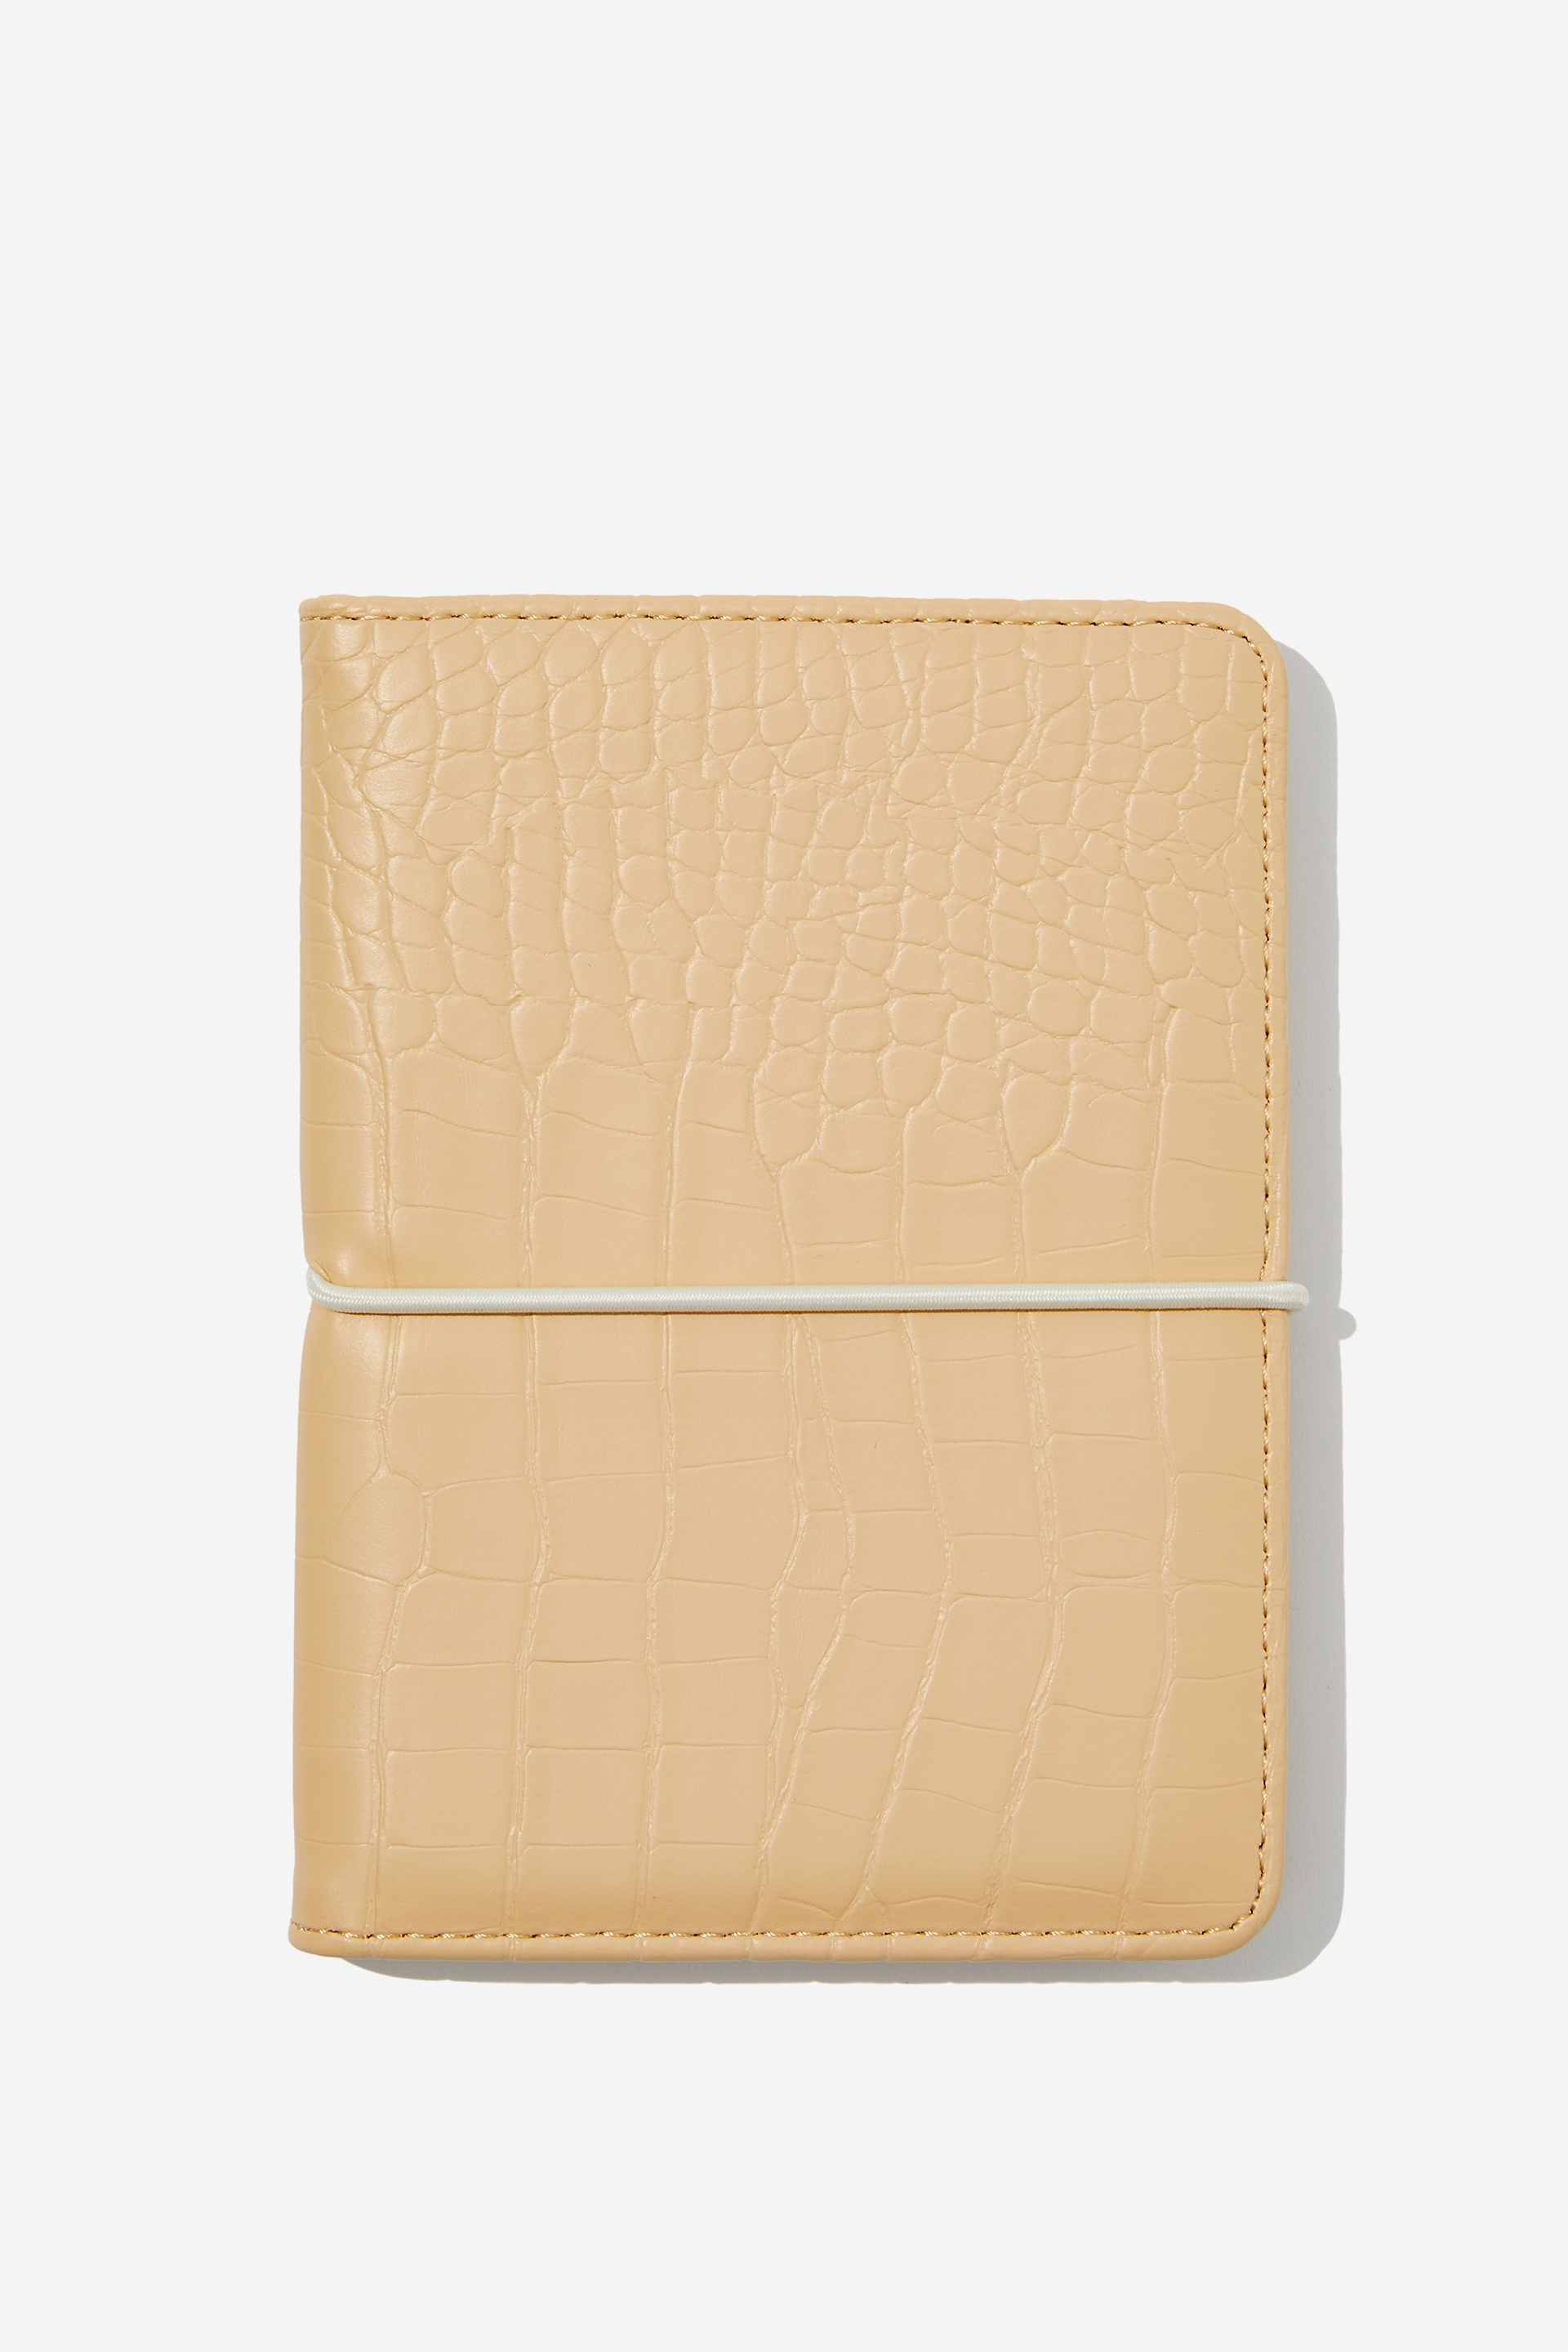 Typo - Off The Grid Passport Holder - Latte textured